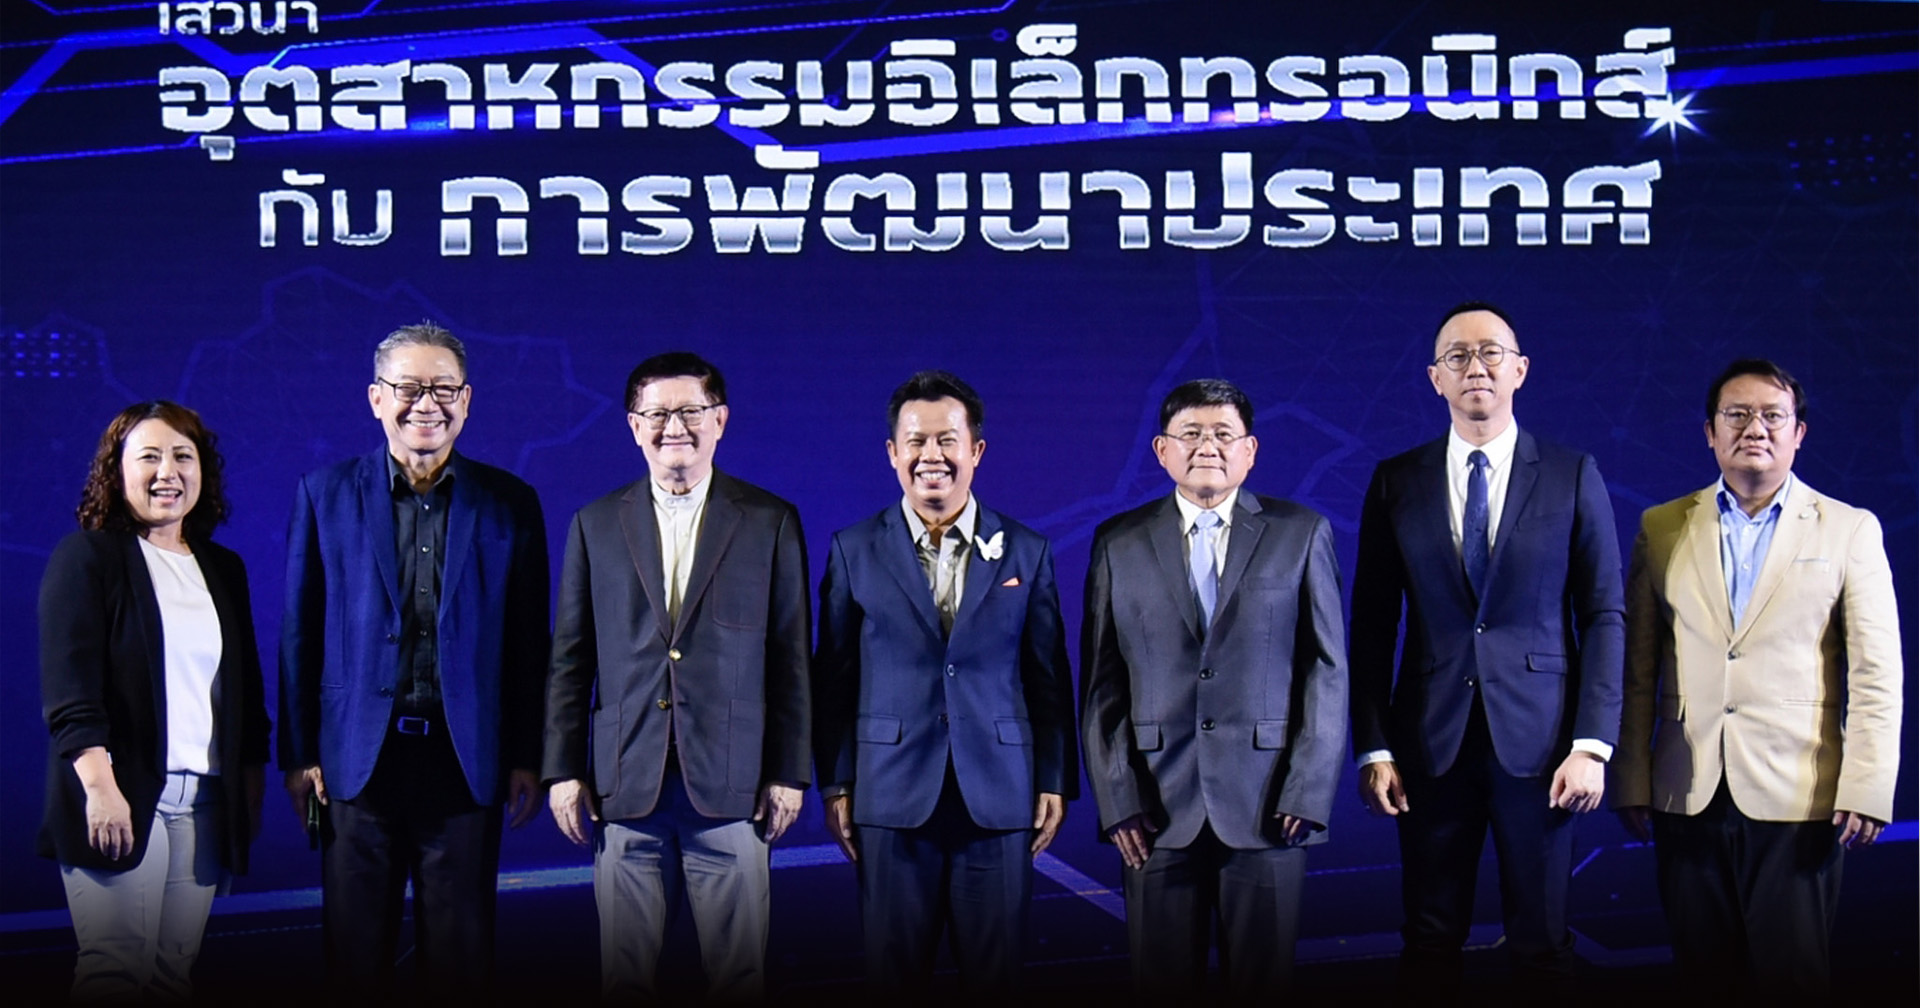 6 ผู้นำชูธงยกระดับ “อุตสาหกรรมอิเล็กทรอนิกส์กับการพัฒนาประเทศไทย” ต้องขับเคลื่อนอิเล็กทรอนิกส์ให้เป็นอุตสาหกรรมต้นน้ำ